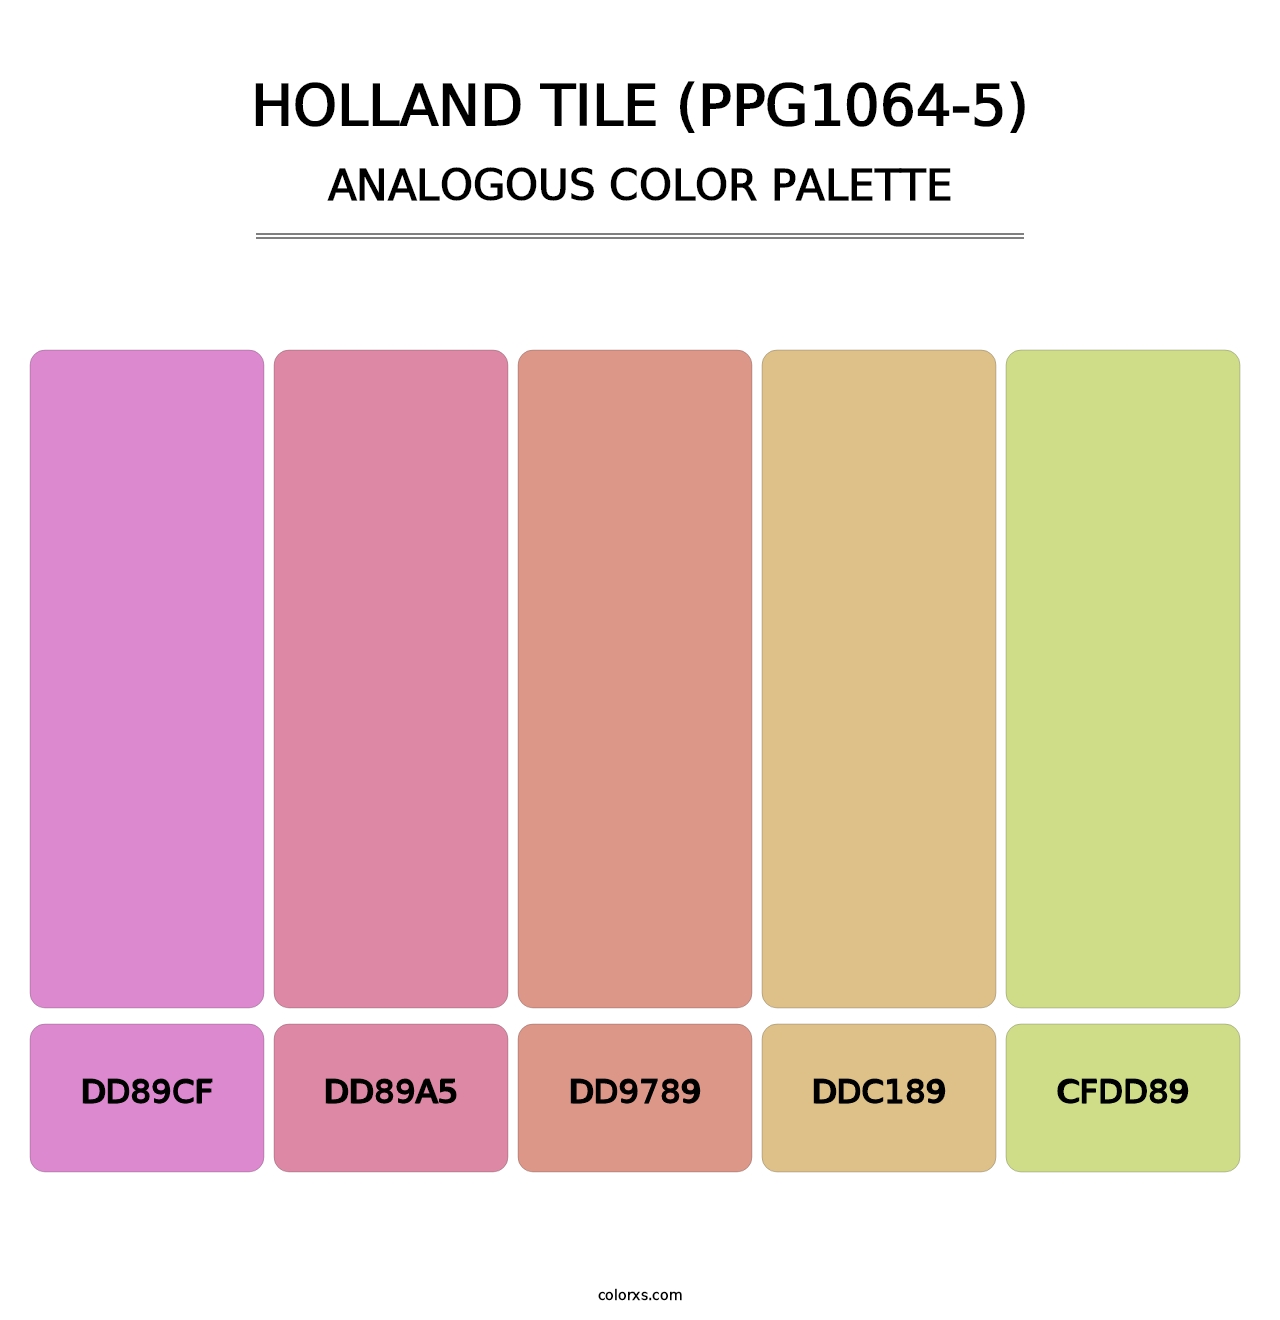 Holland Tile (PPG1064-5) - Analogous Color Palette